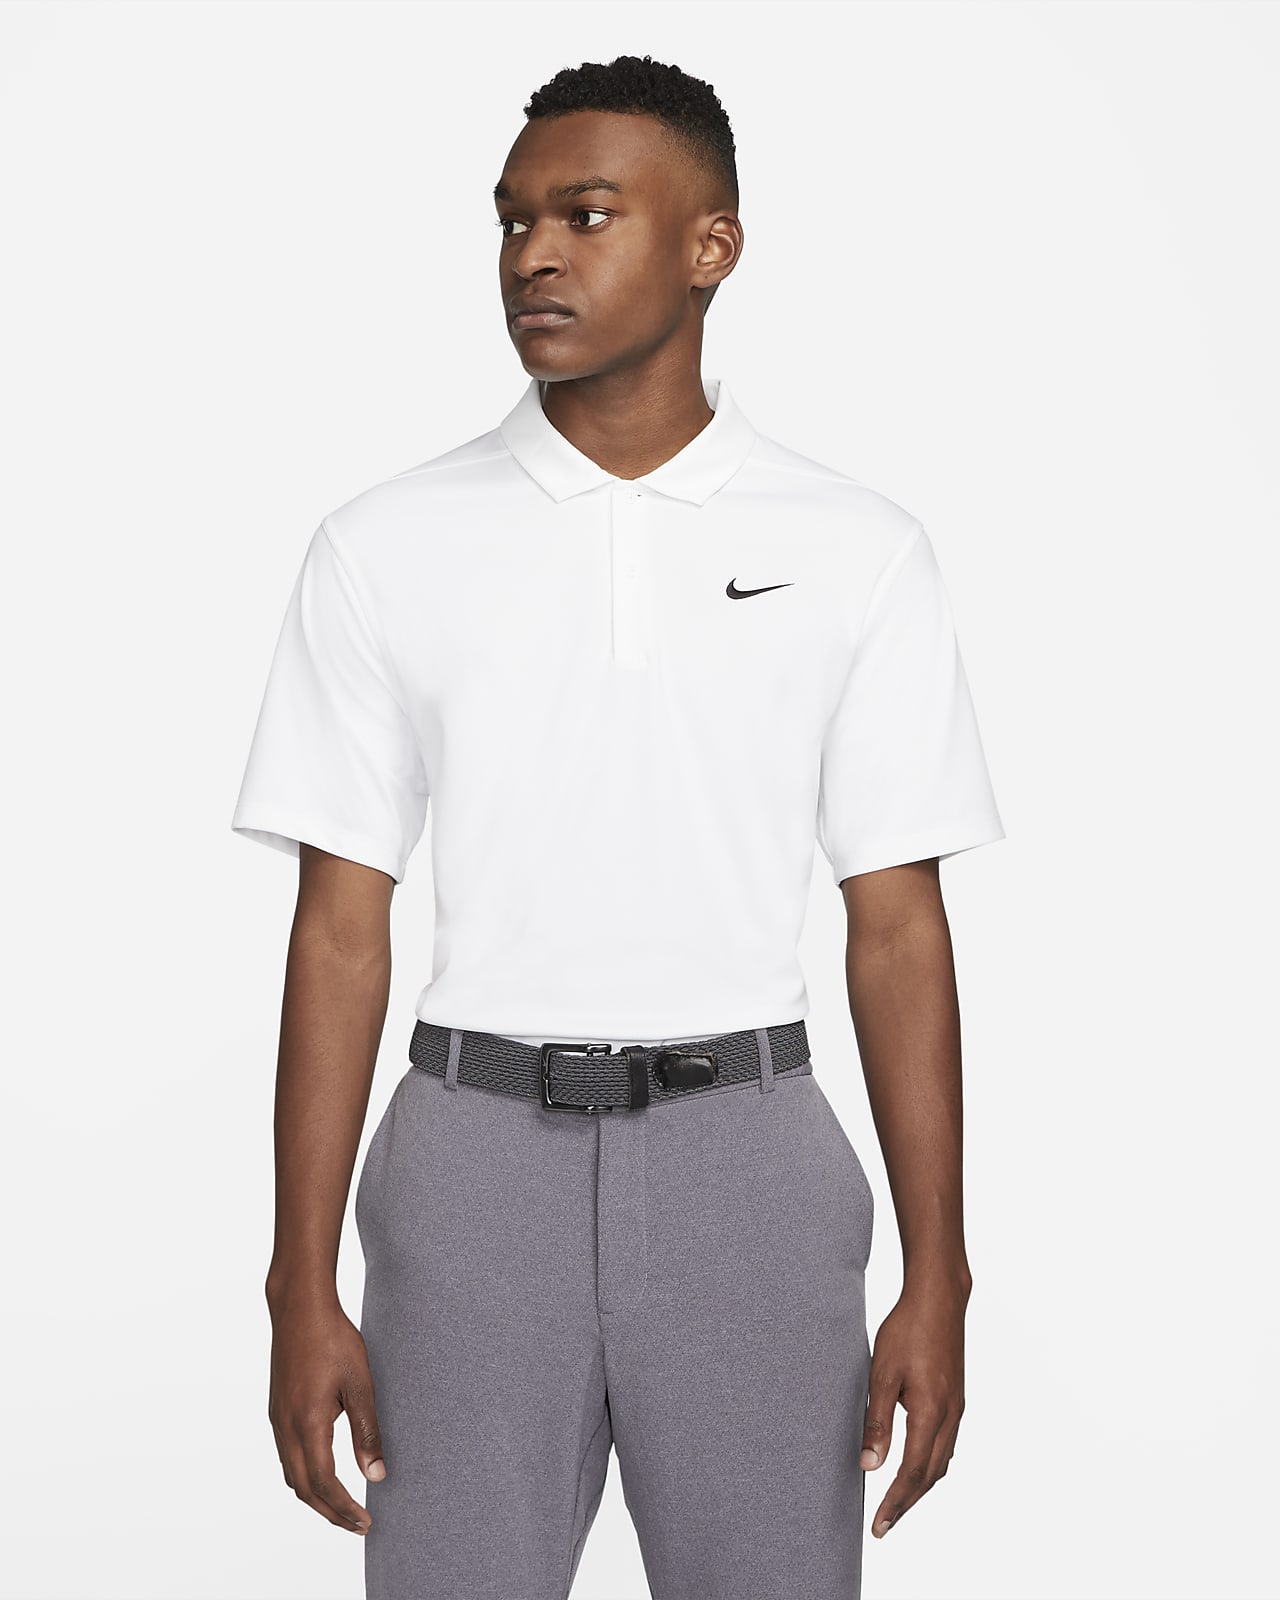 men's dri fit golf shirts